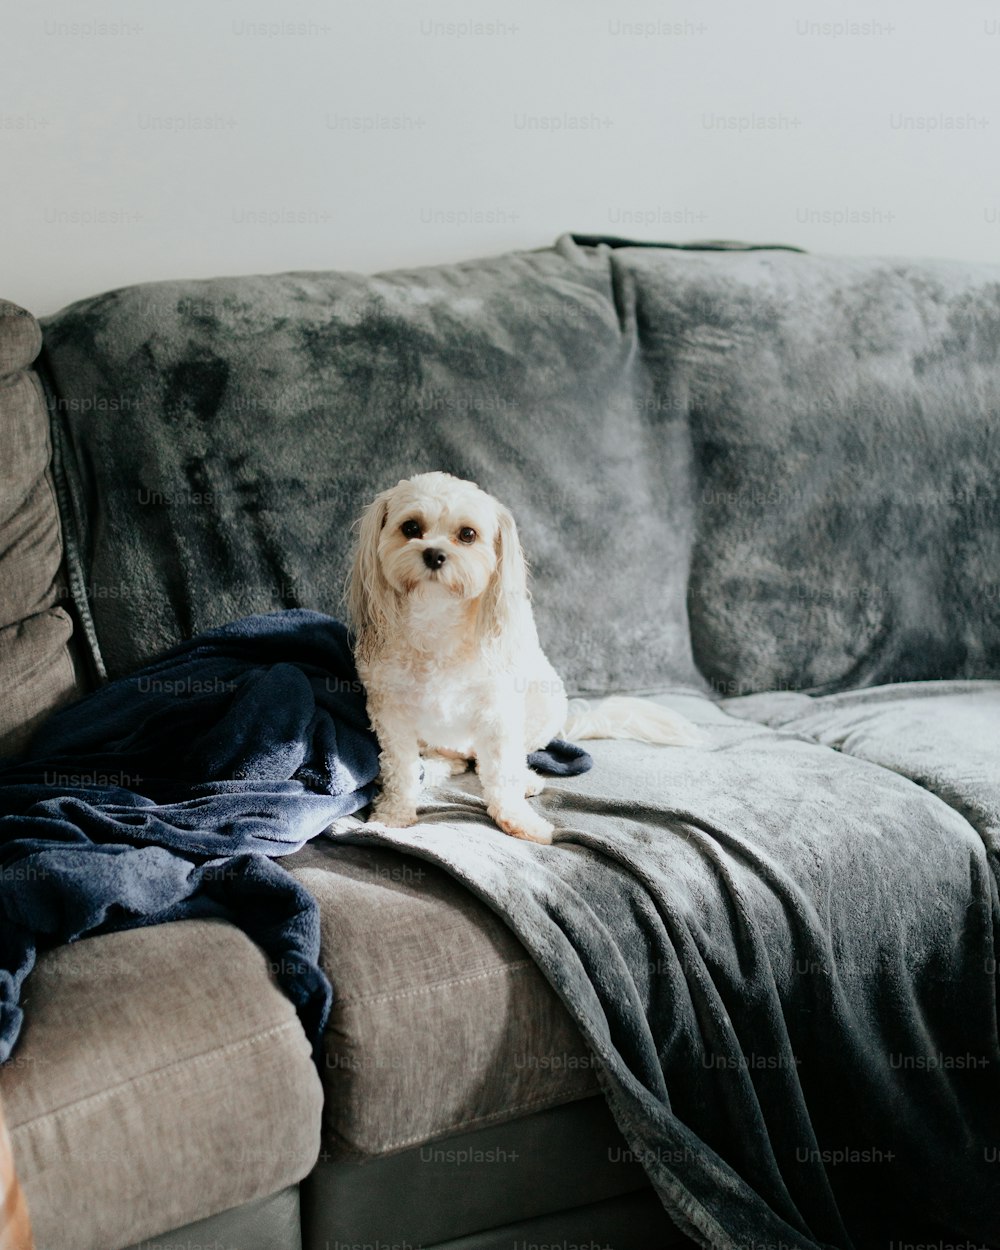 Ein Hund, der auf einer Couch mit einer Decke darauf sitzt